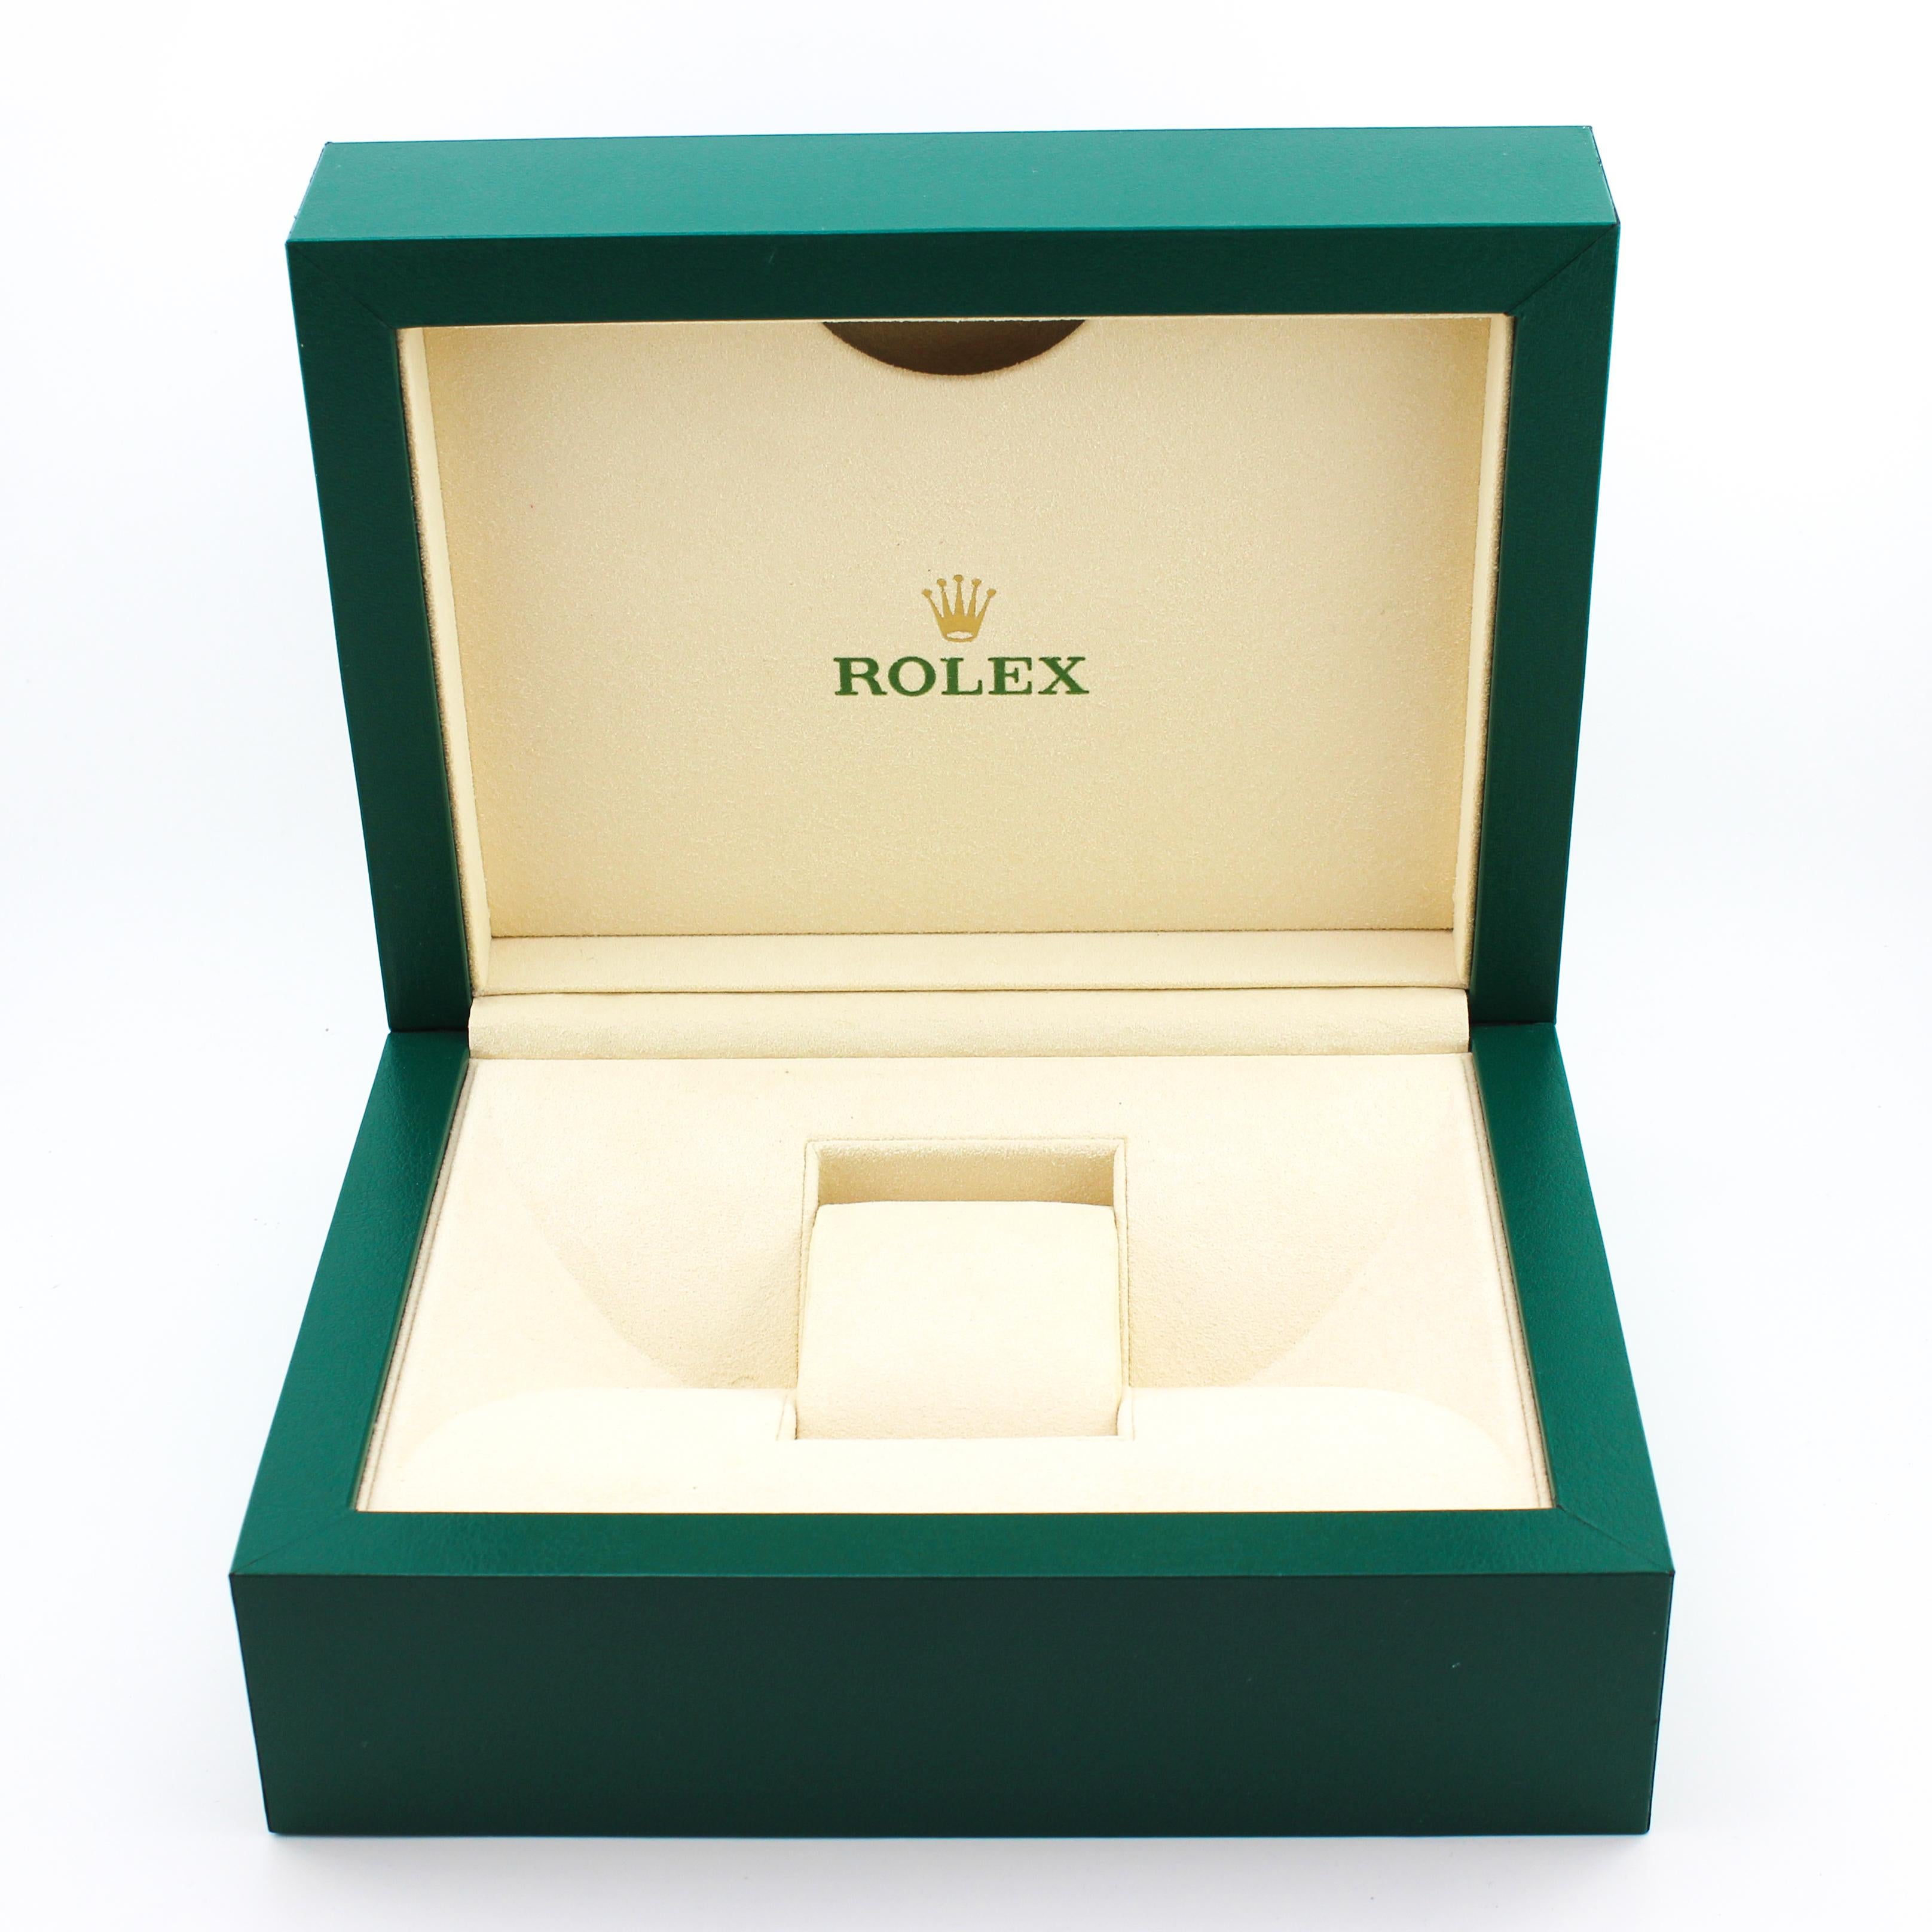 Rolex watch presentation box - Box
Size: 20.1 x 15.7 x 8.8 cm.

 